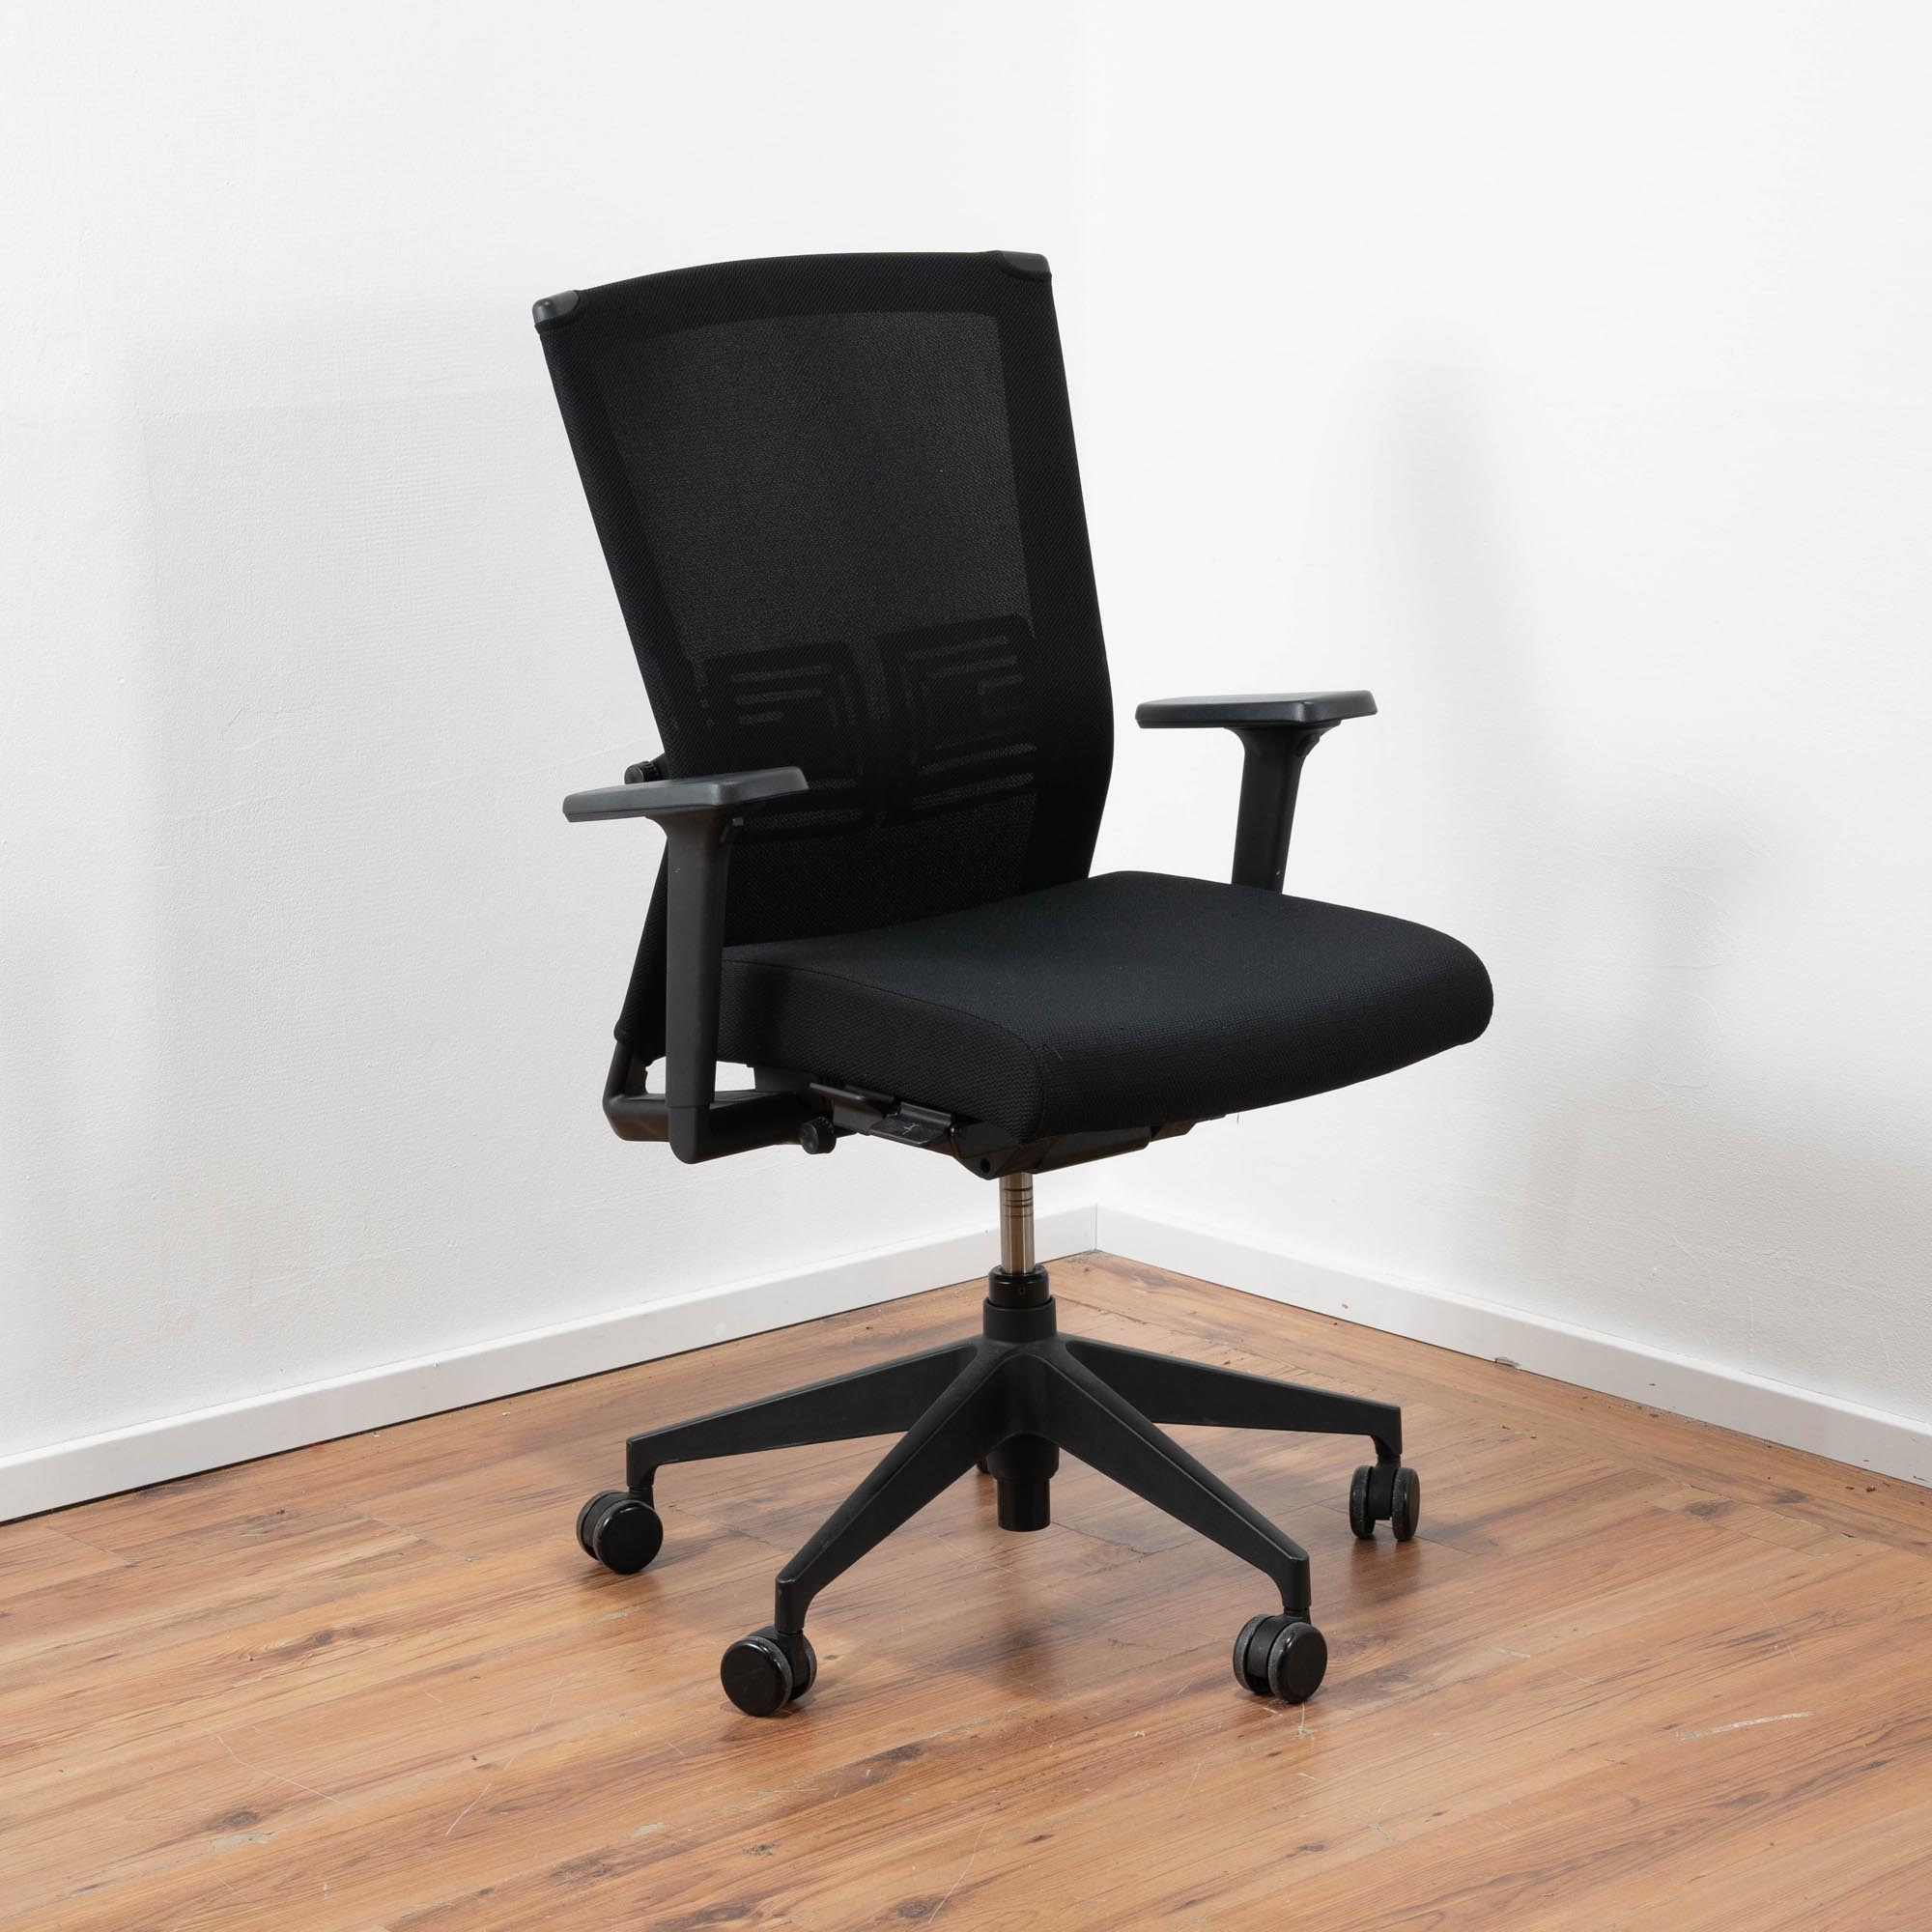 Haworth Bürodrehstuhl Polster schwarz - Netz-Rückenlehne schwarz - Lordosen Stütze - 3D-Armlehnen - Gestell schwarz